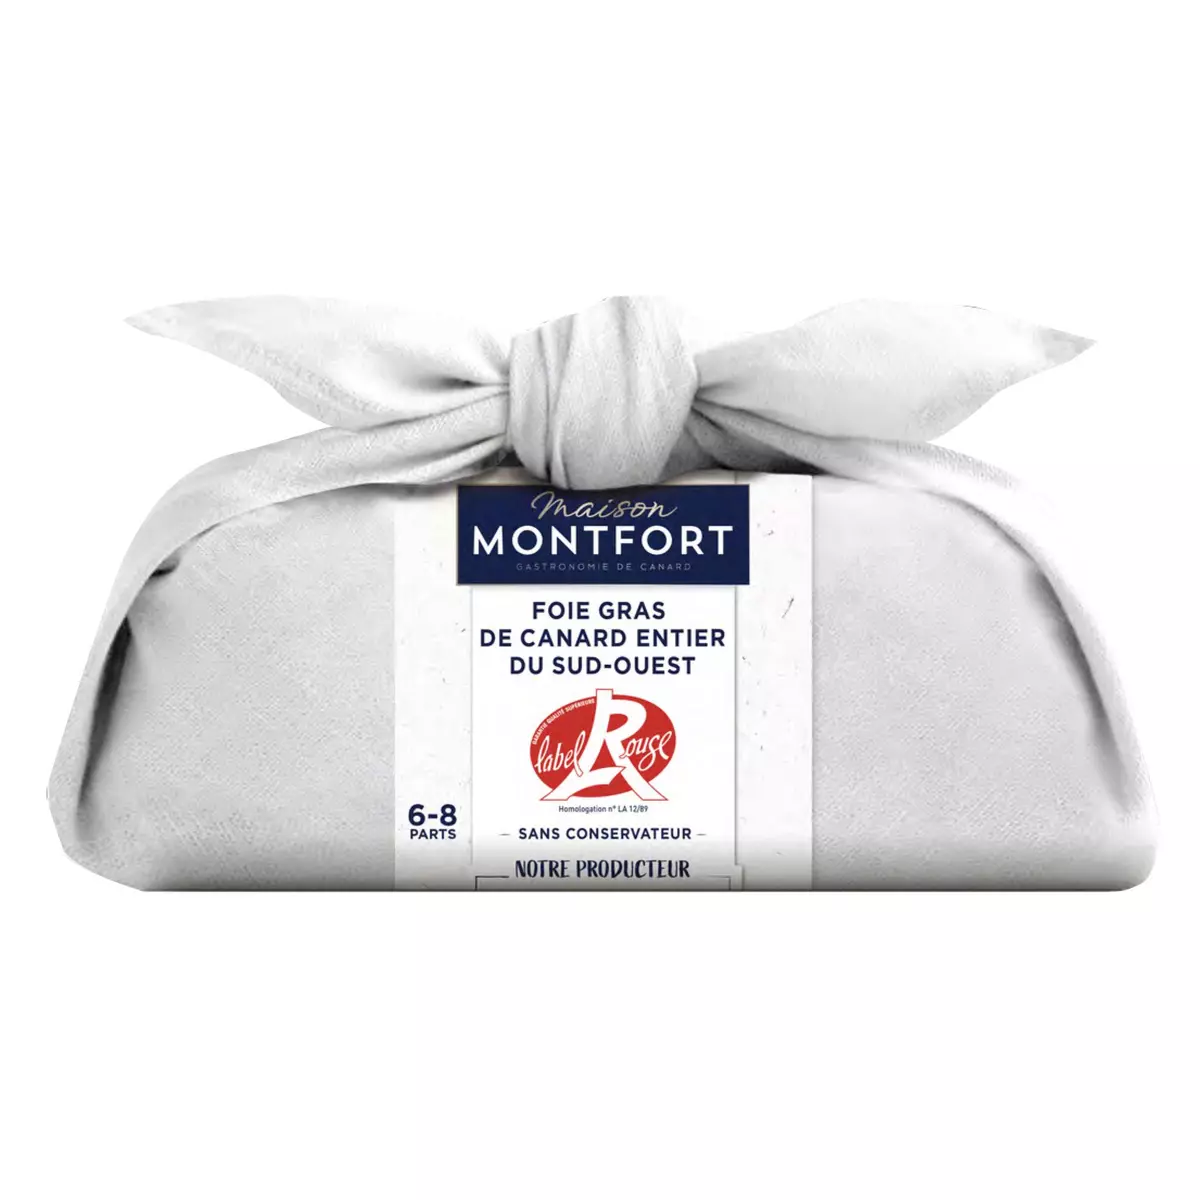 MAISON MONTFORT Foie gras de canard entier du Sud-Ouest Label Rouge 6-8parts 250g